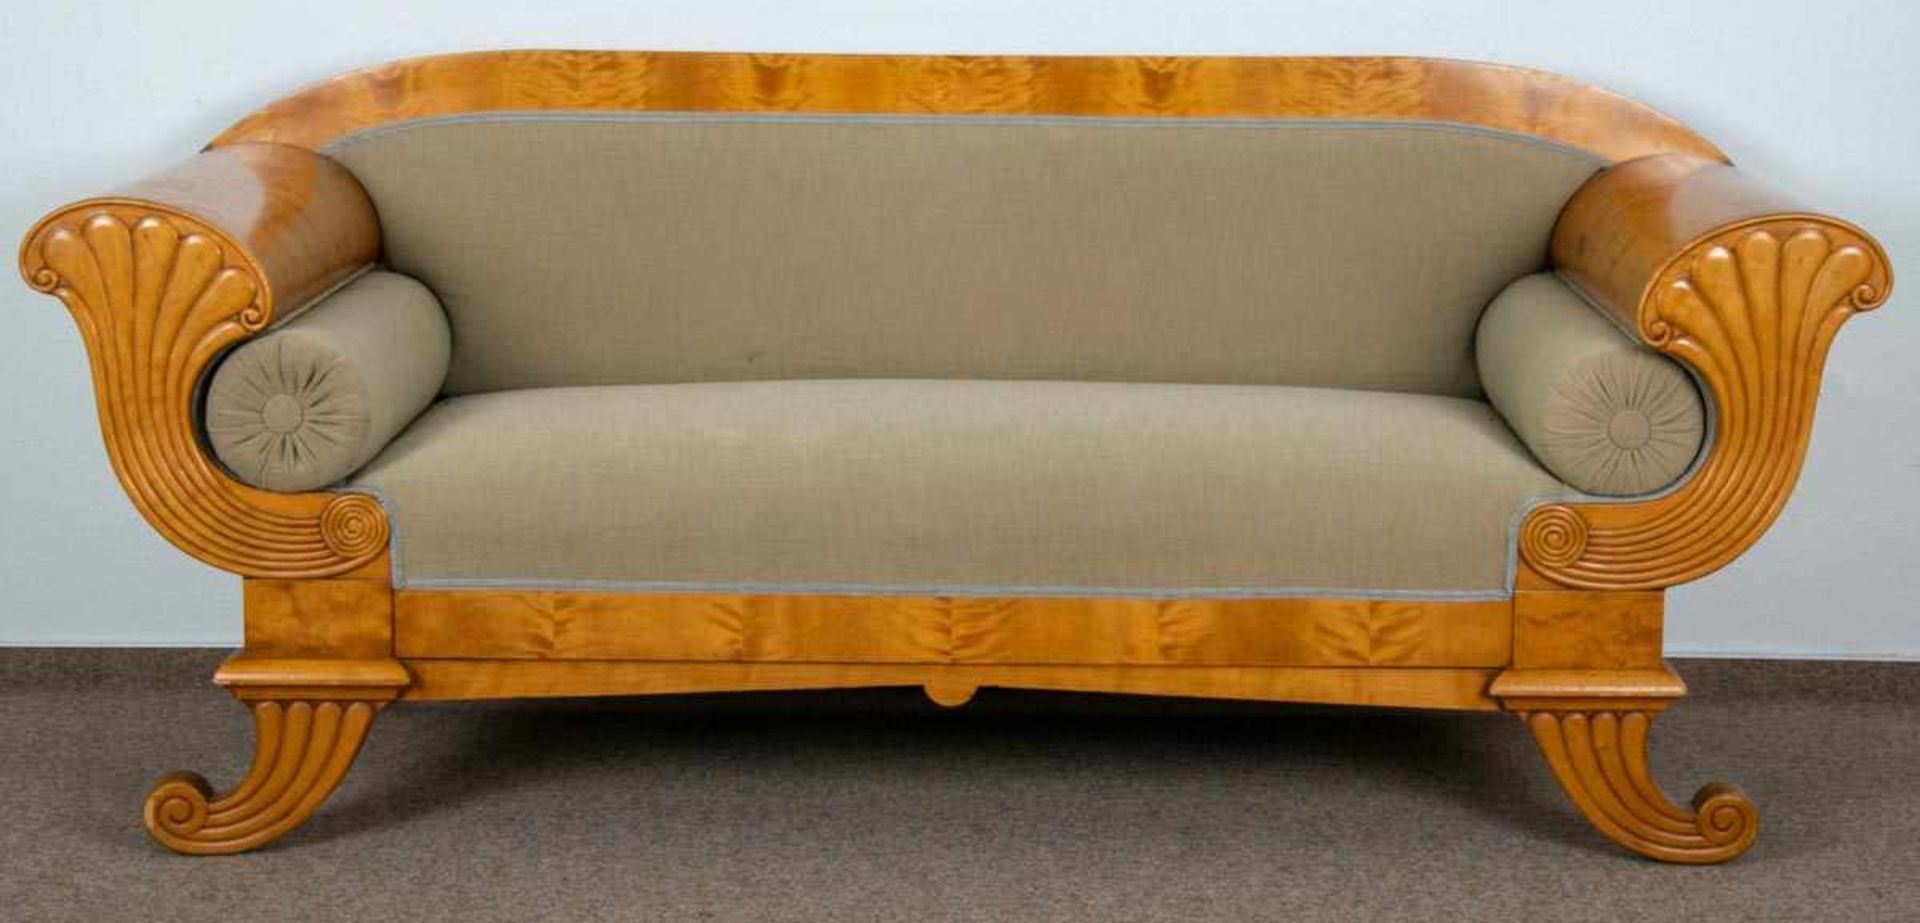 Elegantes Sofa. Biedermeier, Schweden um 1920/30. Birke massiv & furniert. Schöner, gepflegter